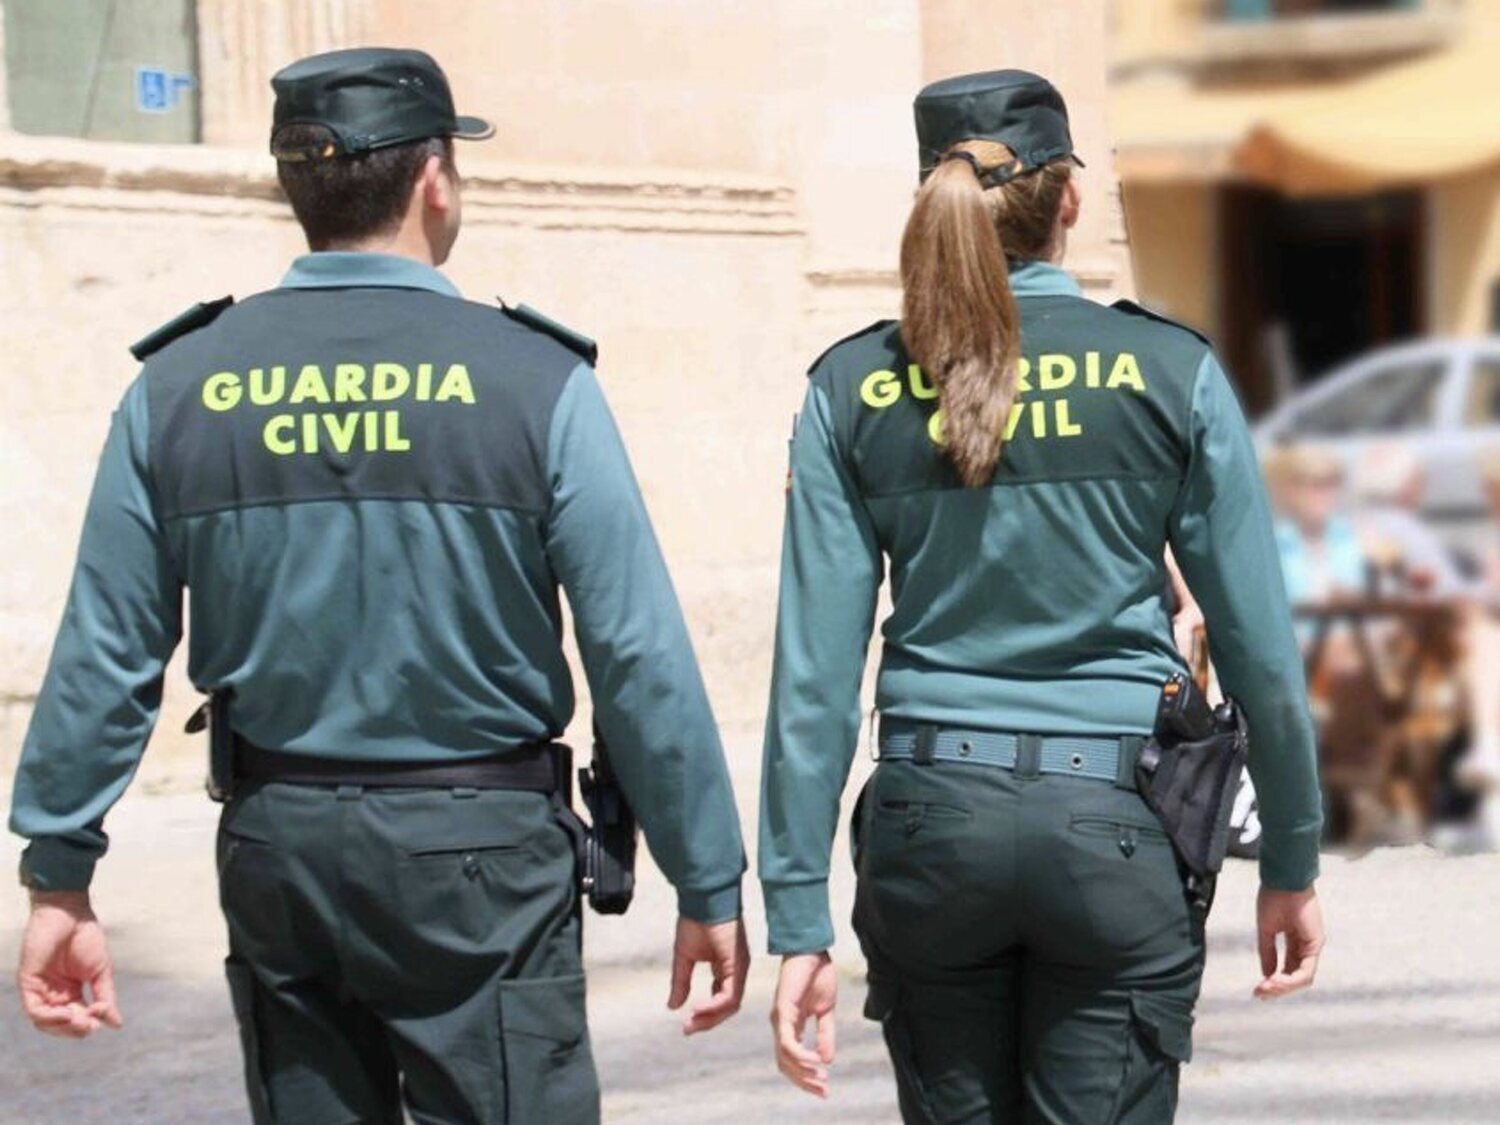 Un hombre envenena a sus dos hijas de 2 y 4 años y luego se suicida en Almería: se investiga como violencia vicaria